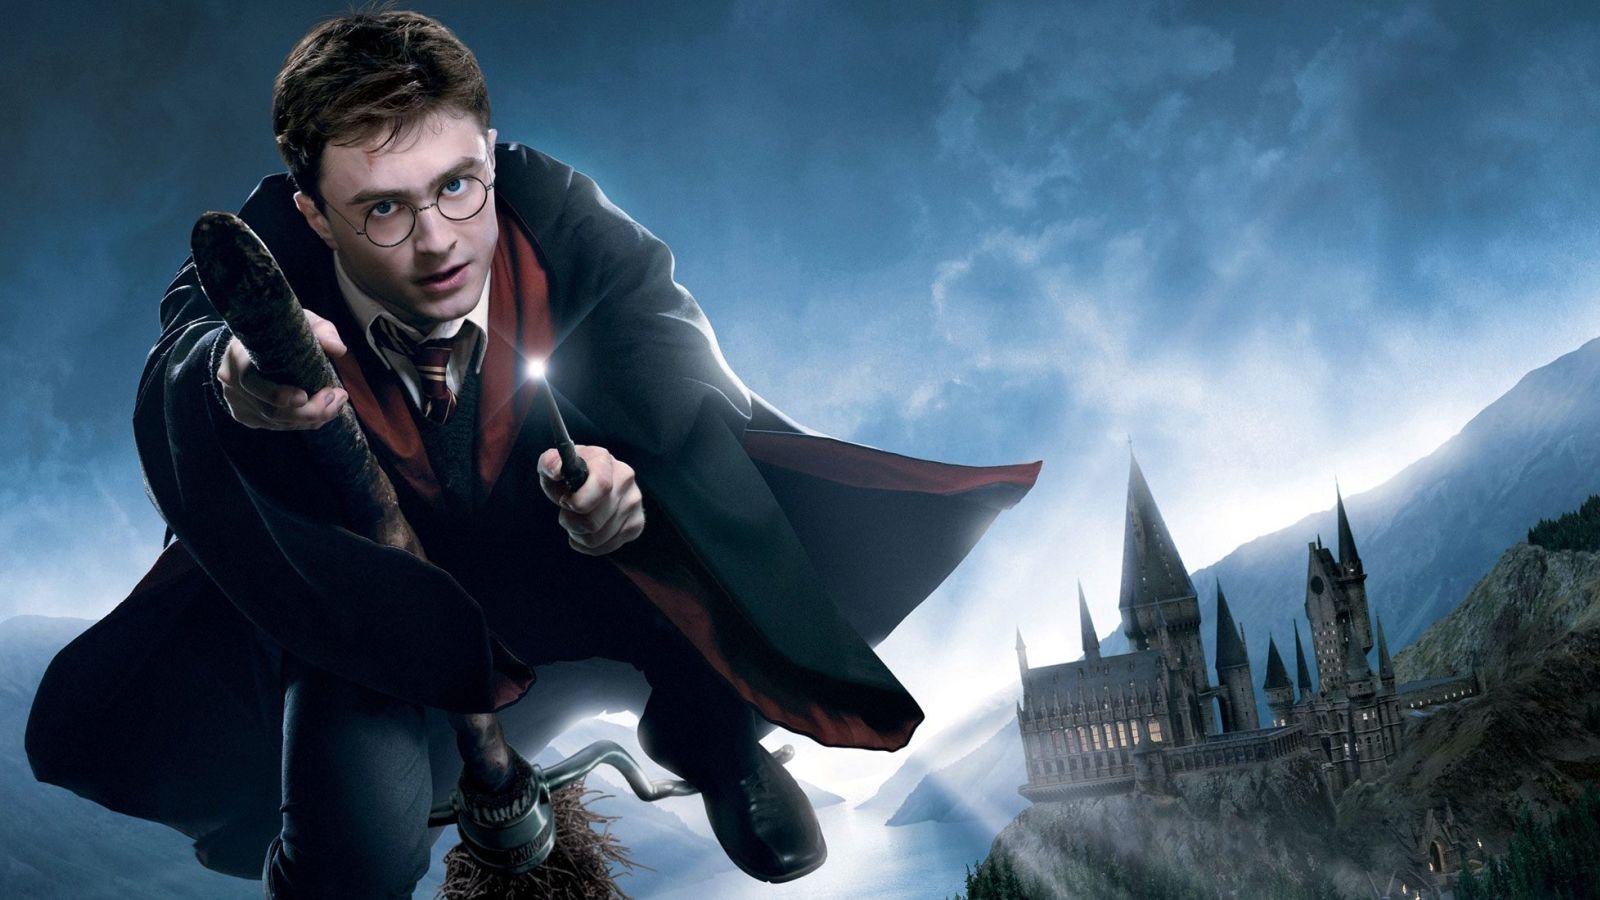 Harry Potter: in arrivo una nuova serie di audiolibri Audible di tutti i romanzi, più di 100 attori coinvolti